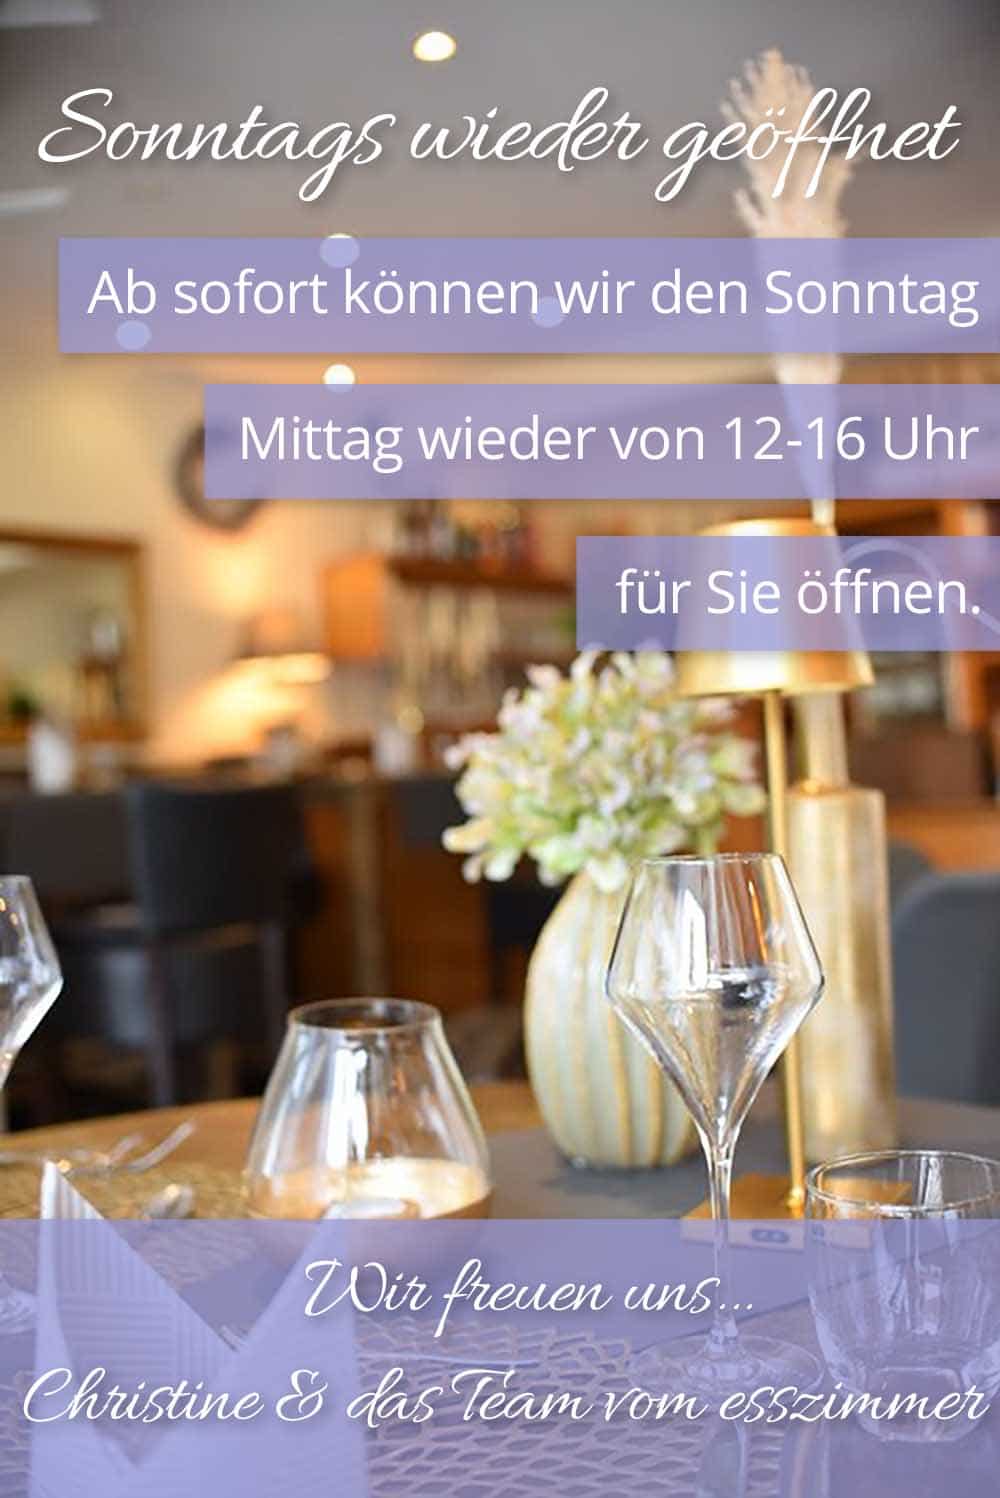 Sonntags wieder offen – Restaurant in Merzig Losheim Rimliingen